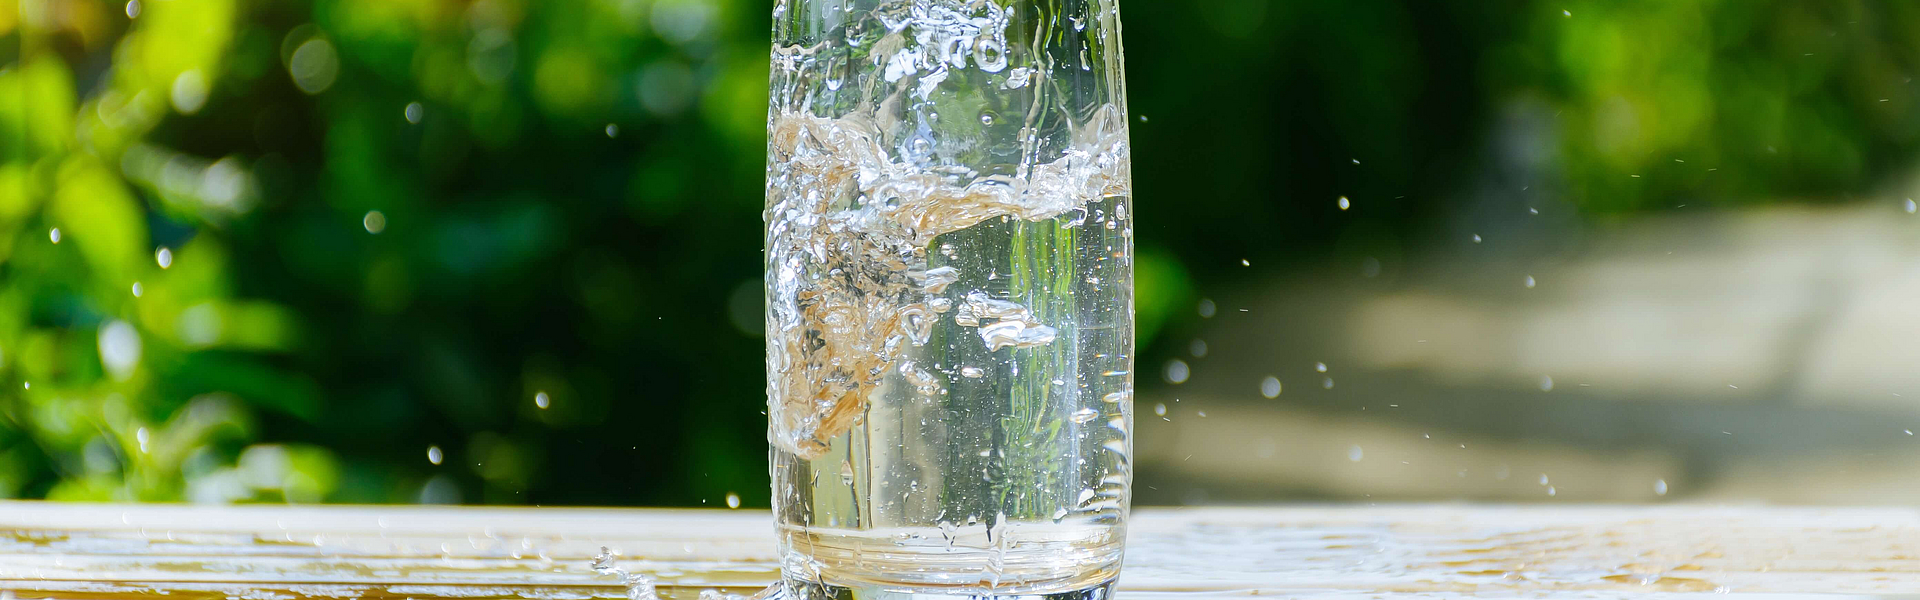 Wasser fließt in eine Glas